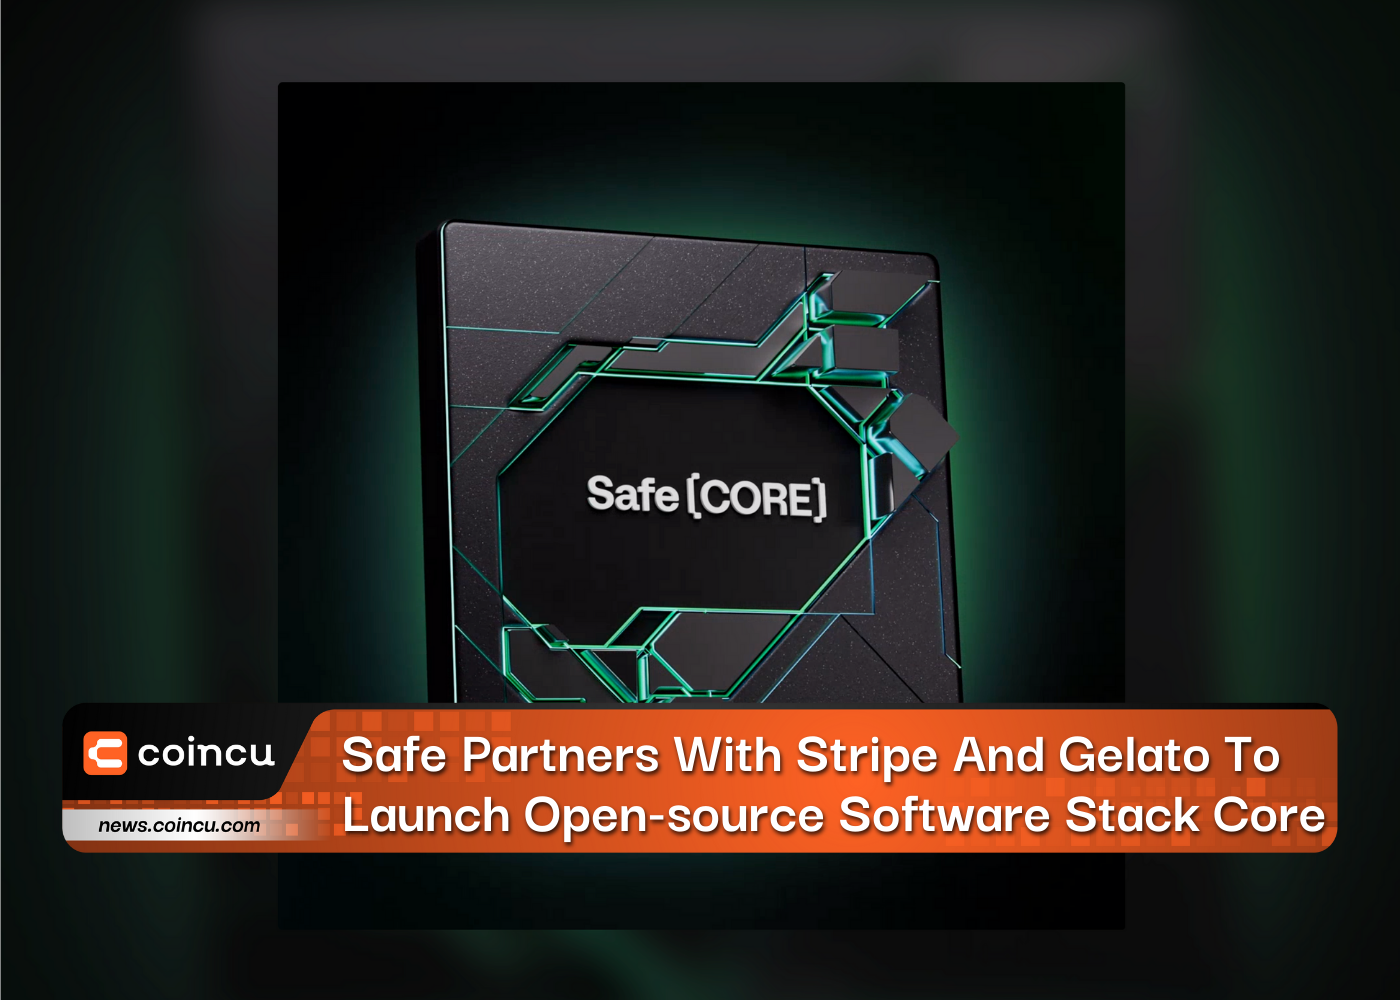 Safe arbeitet mit Stripe und Gelato zusammen, um den Open-Source-Software-Stack Core auf den Markt zu bringen